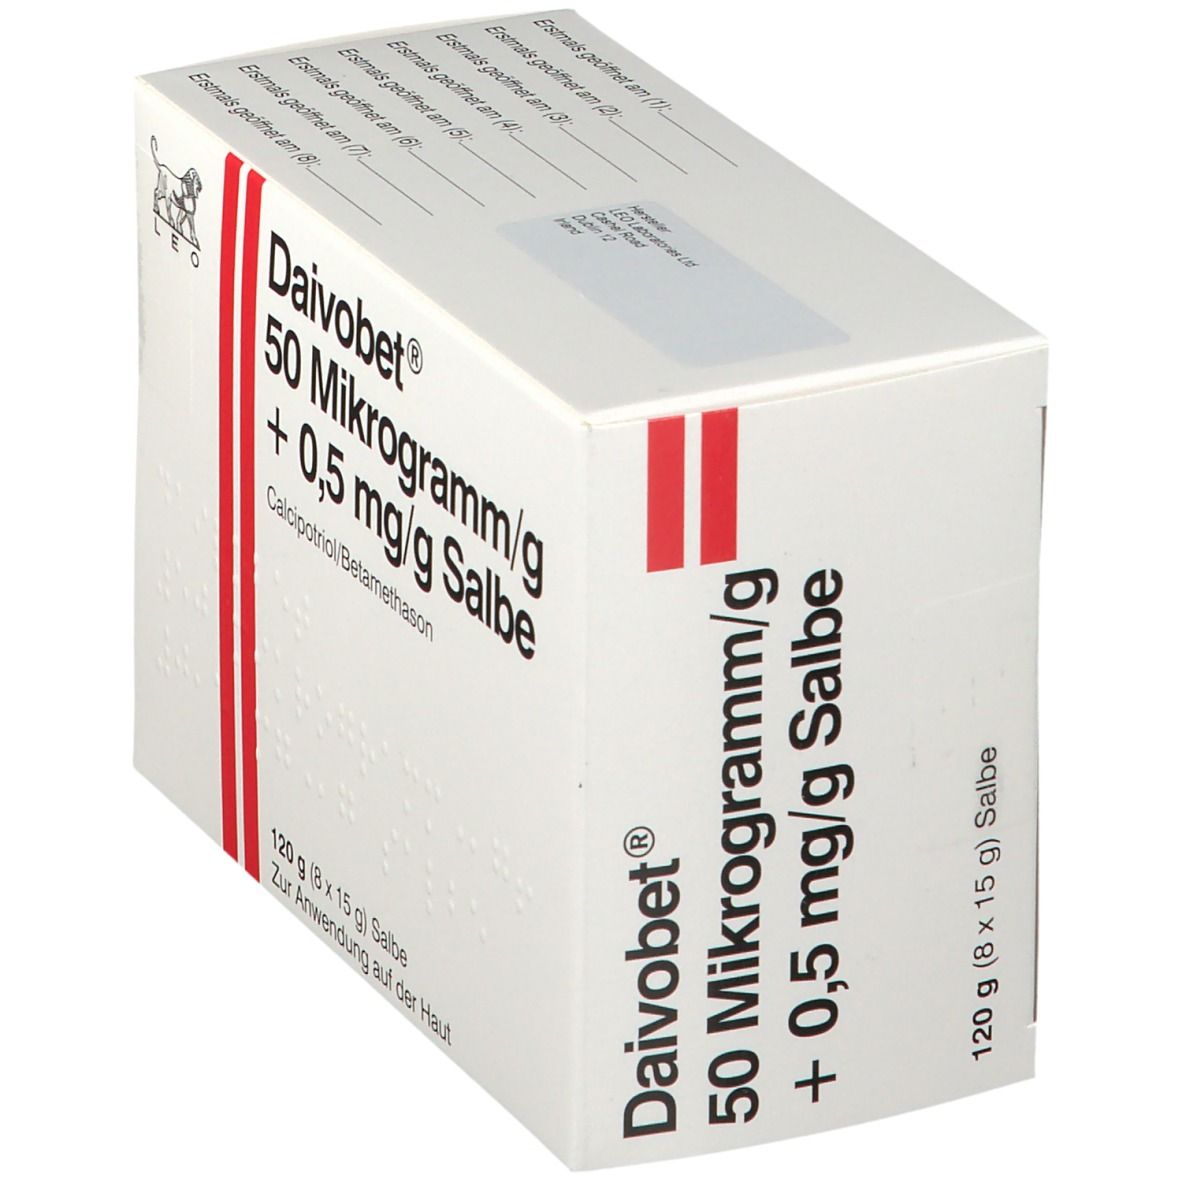 Daivobet 50 µg/g + 0,5 mg/g Salbe